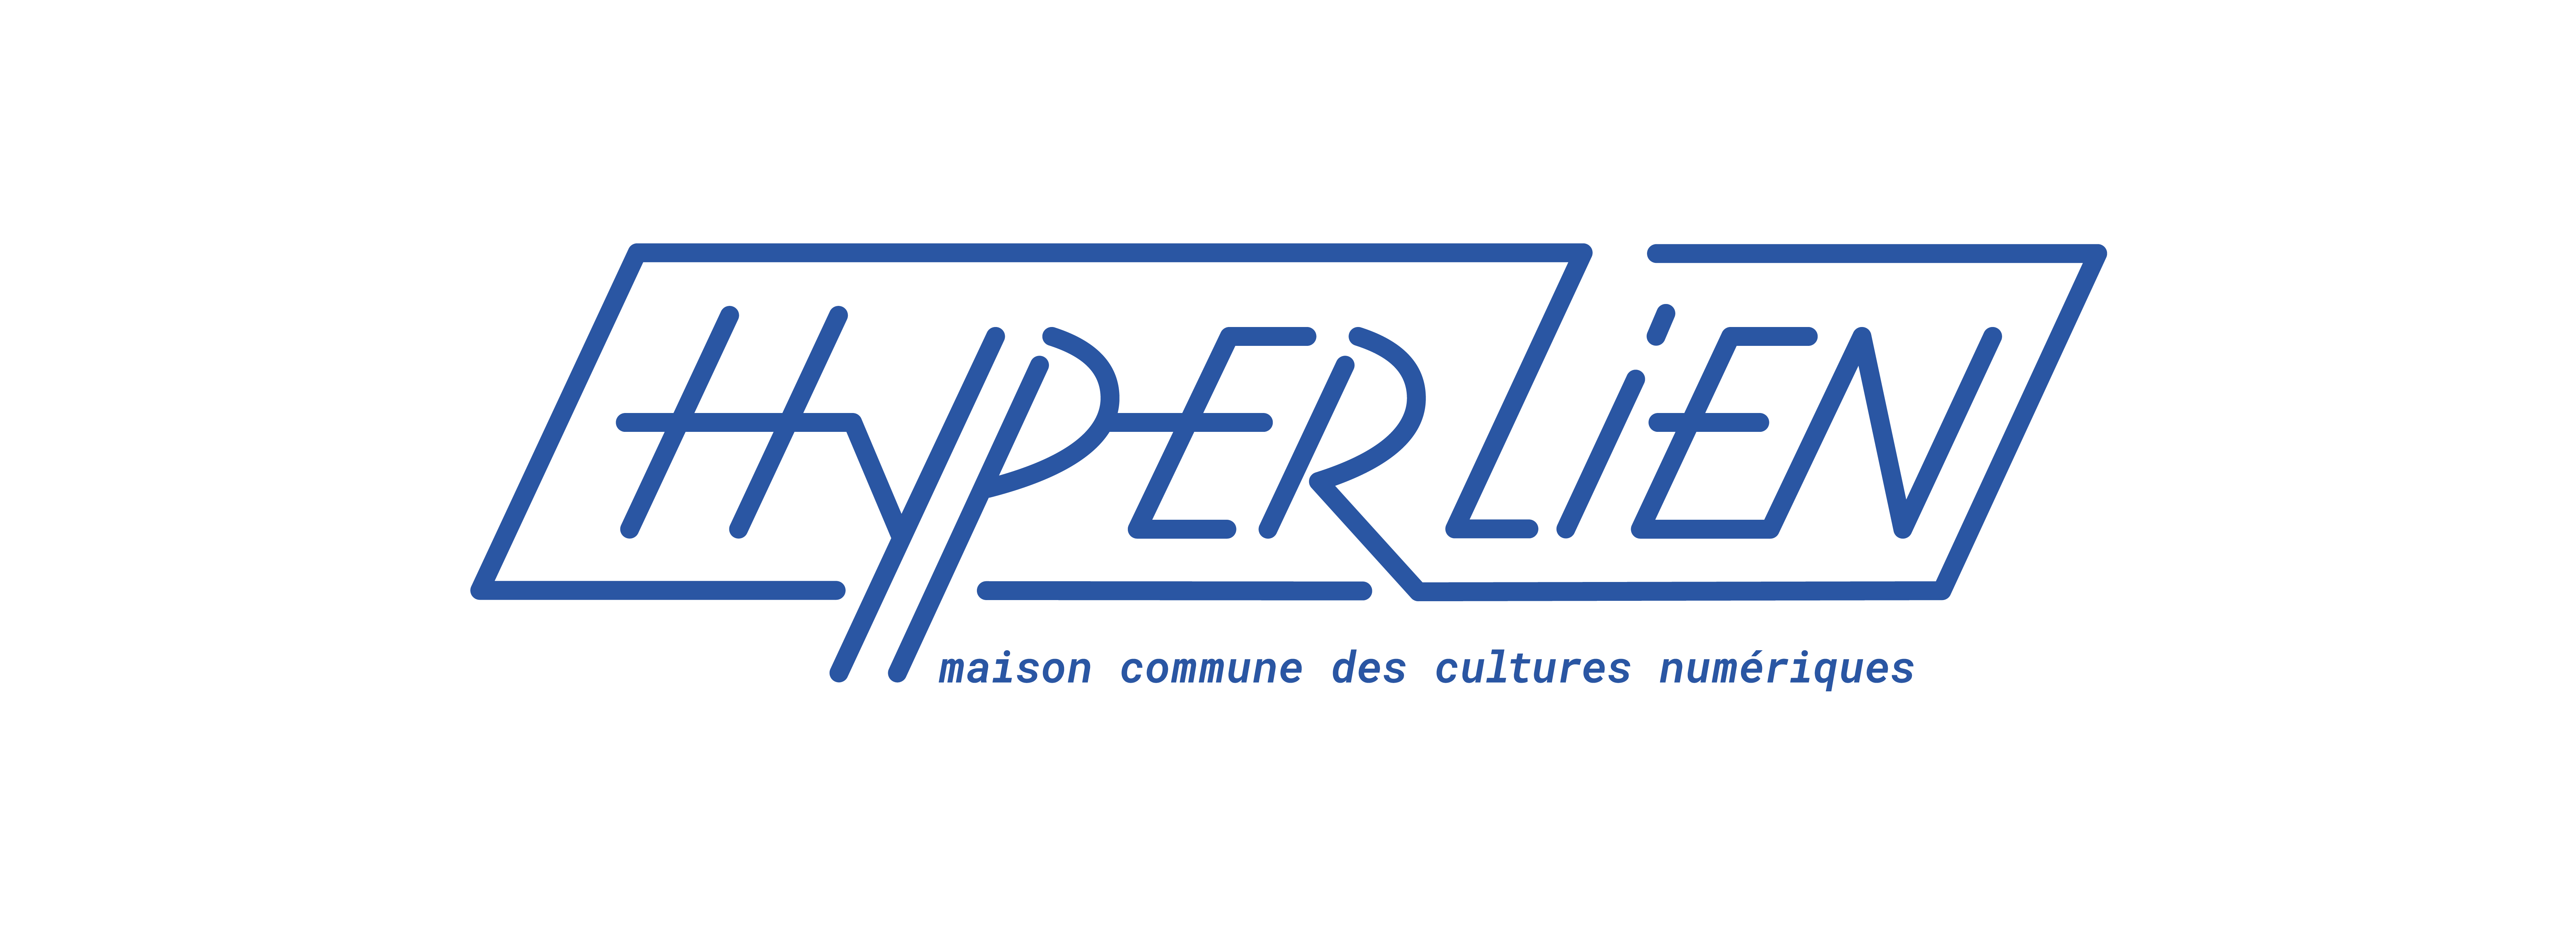 Hyperlien_final-bleu